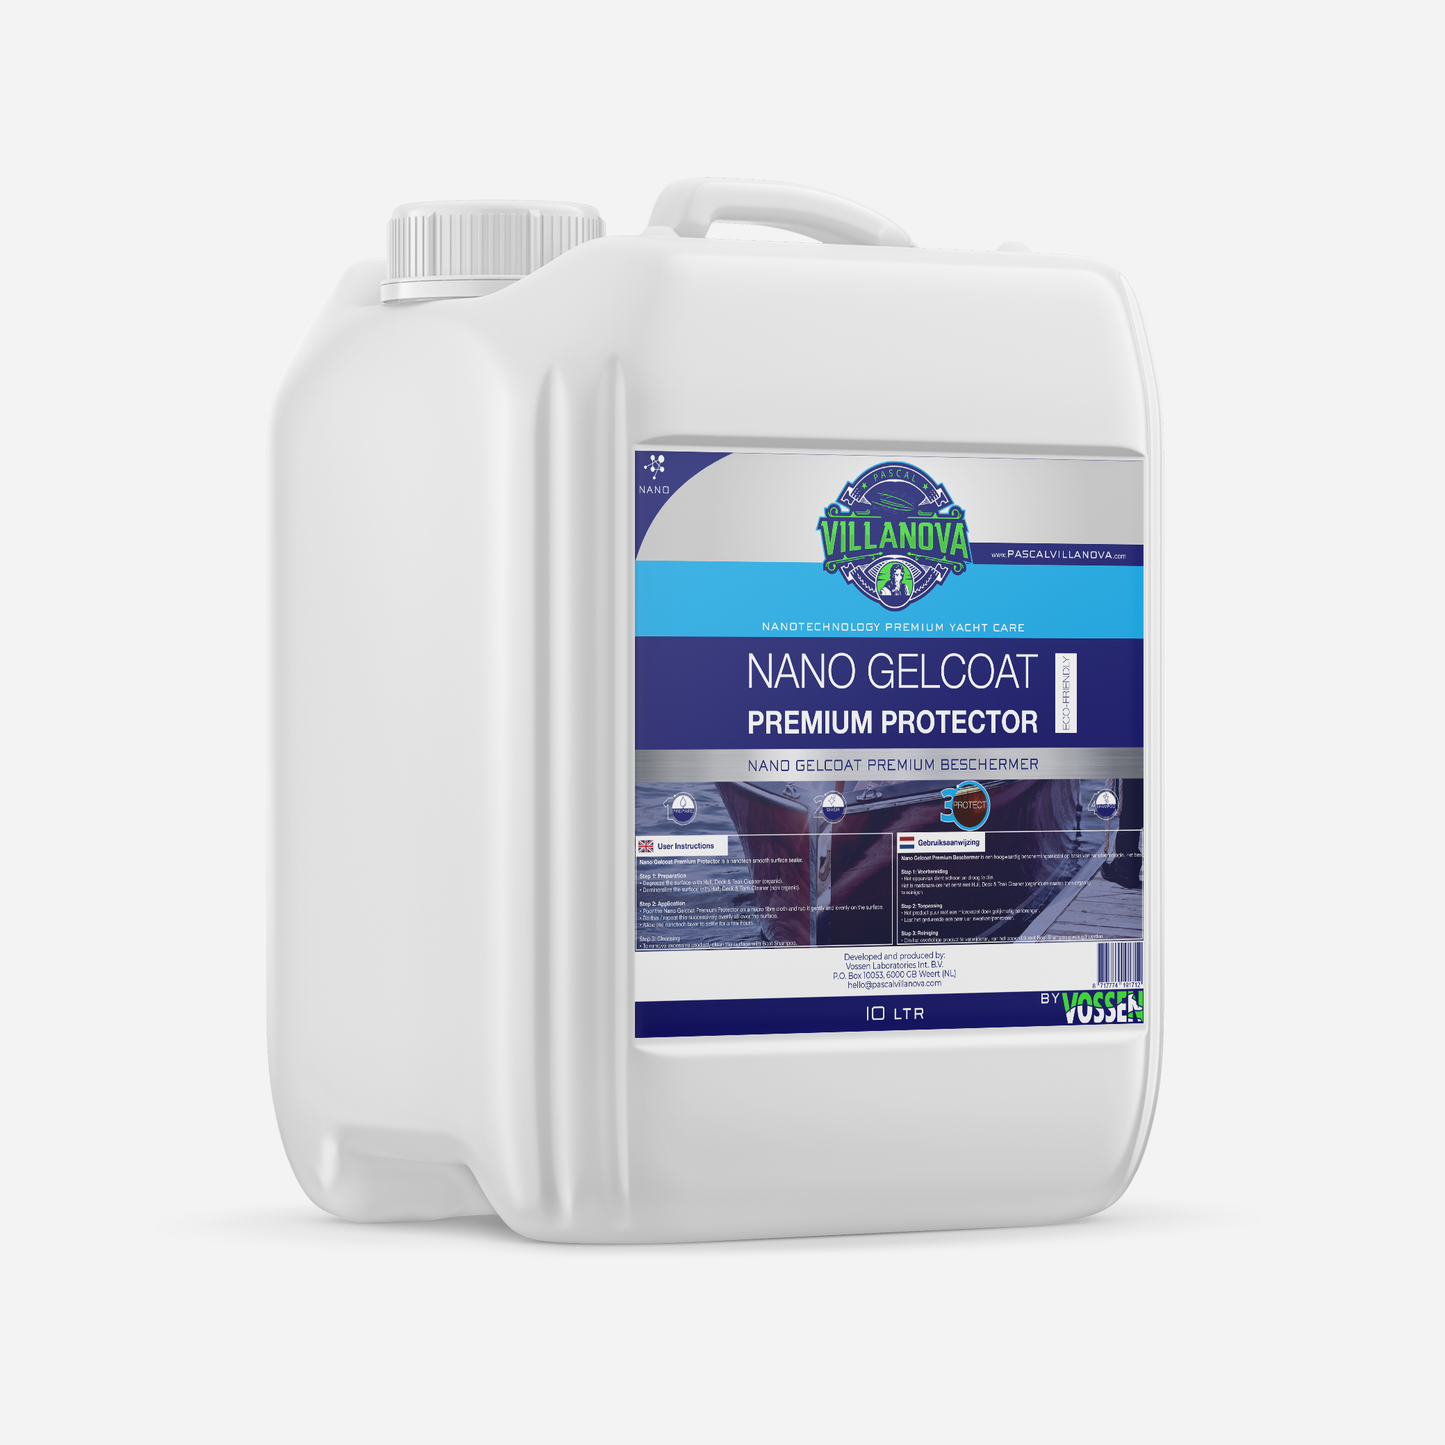 Nano Gelcoat Premium Protector